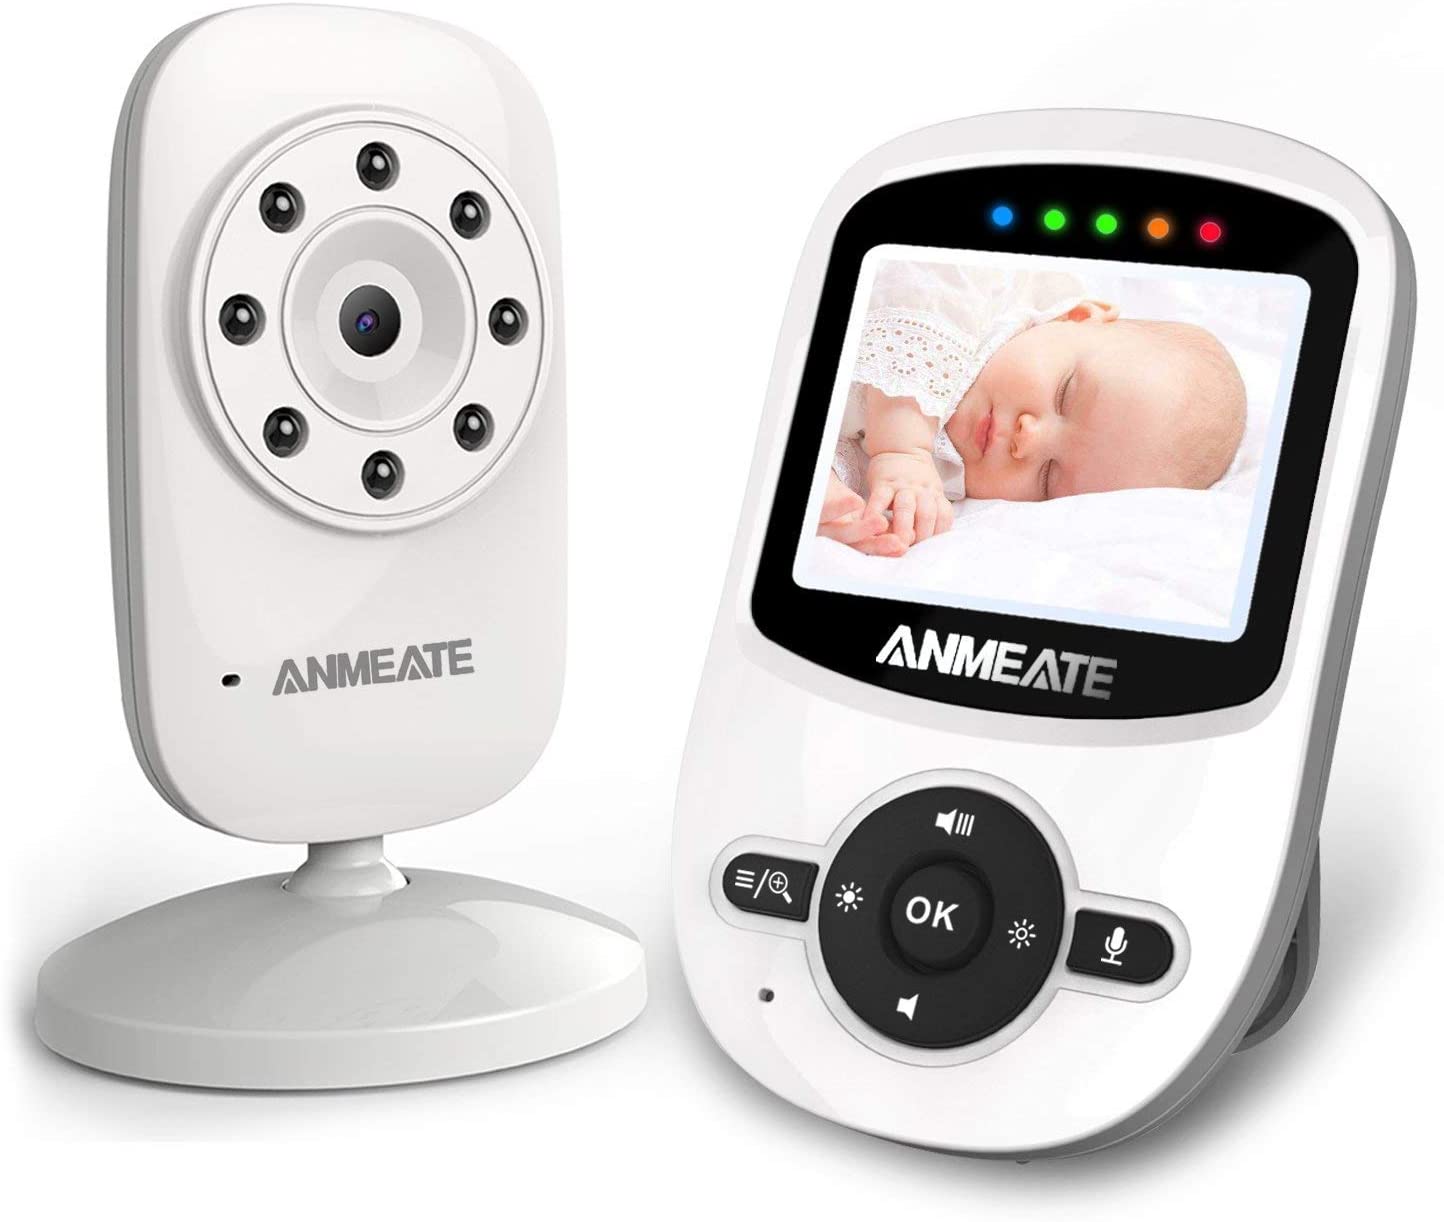 Kamera monitor bayi definisi tinggi yang dapat diisi ulang